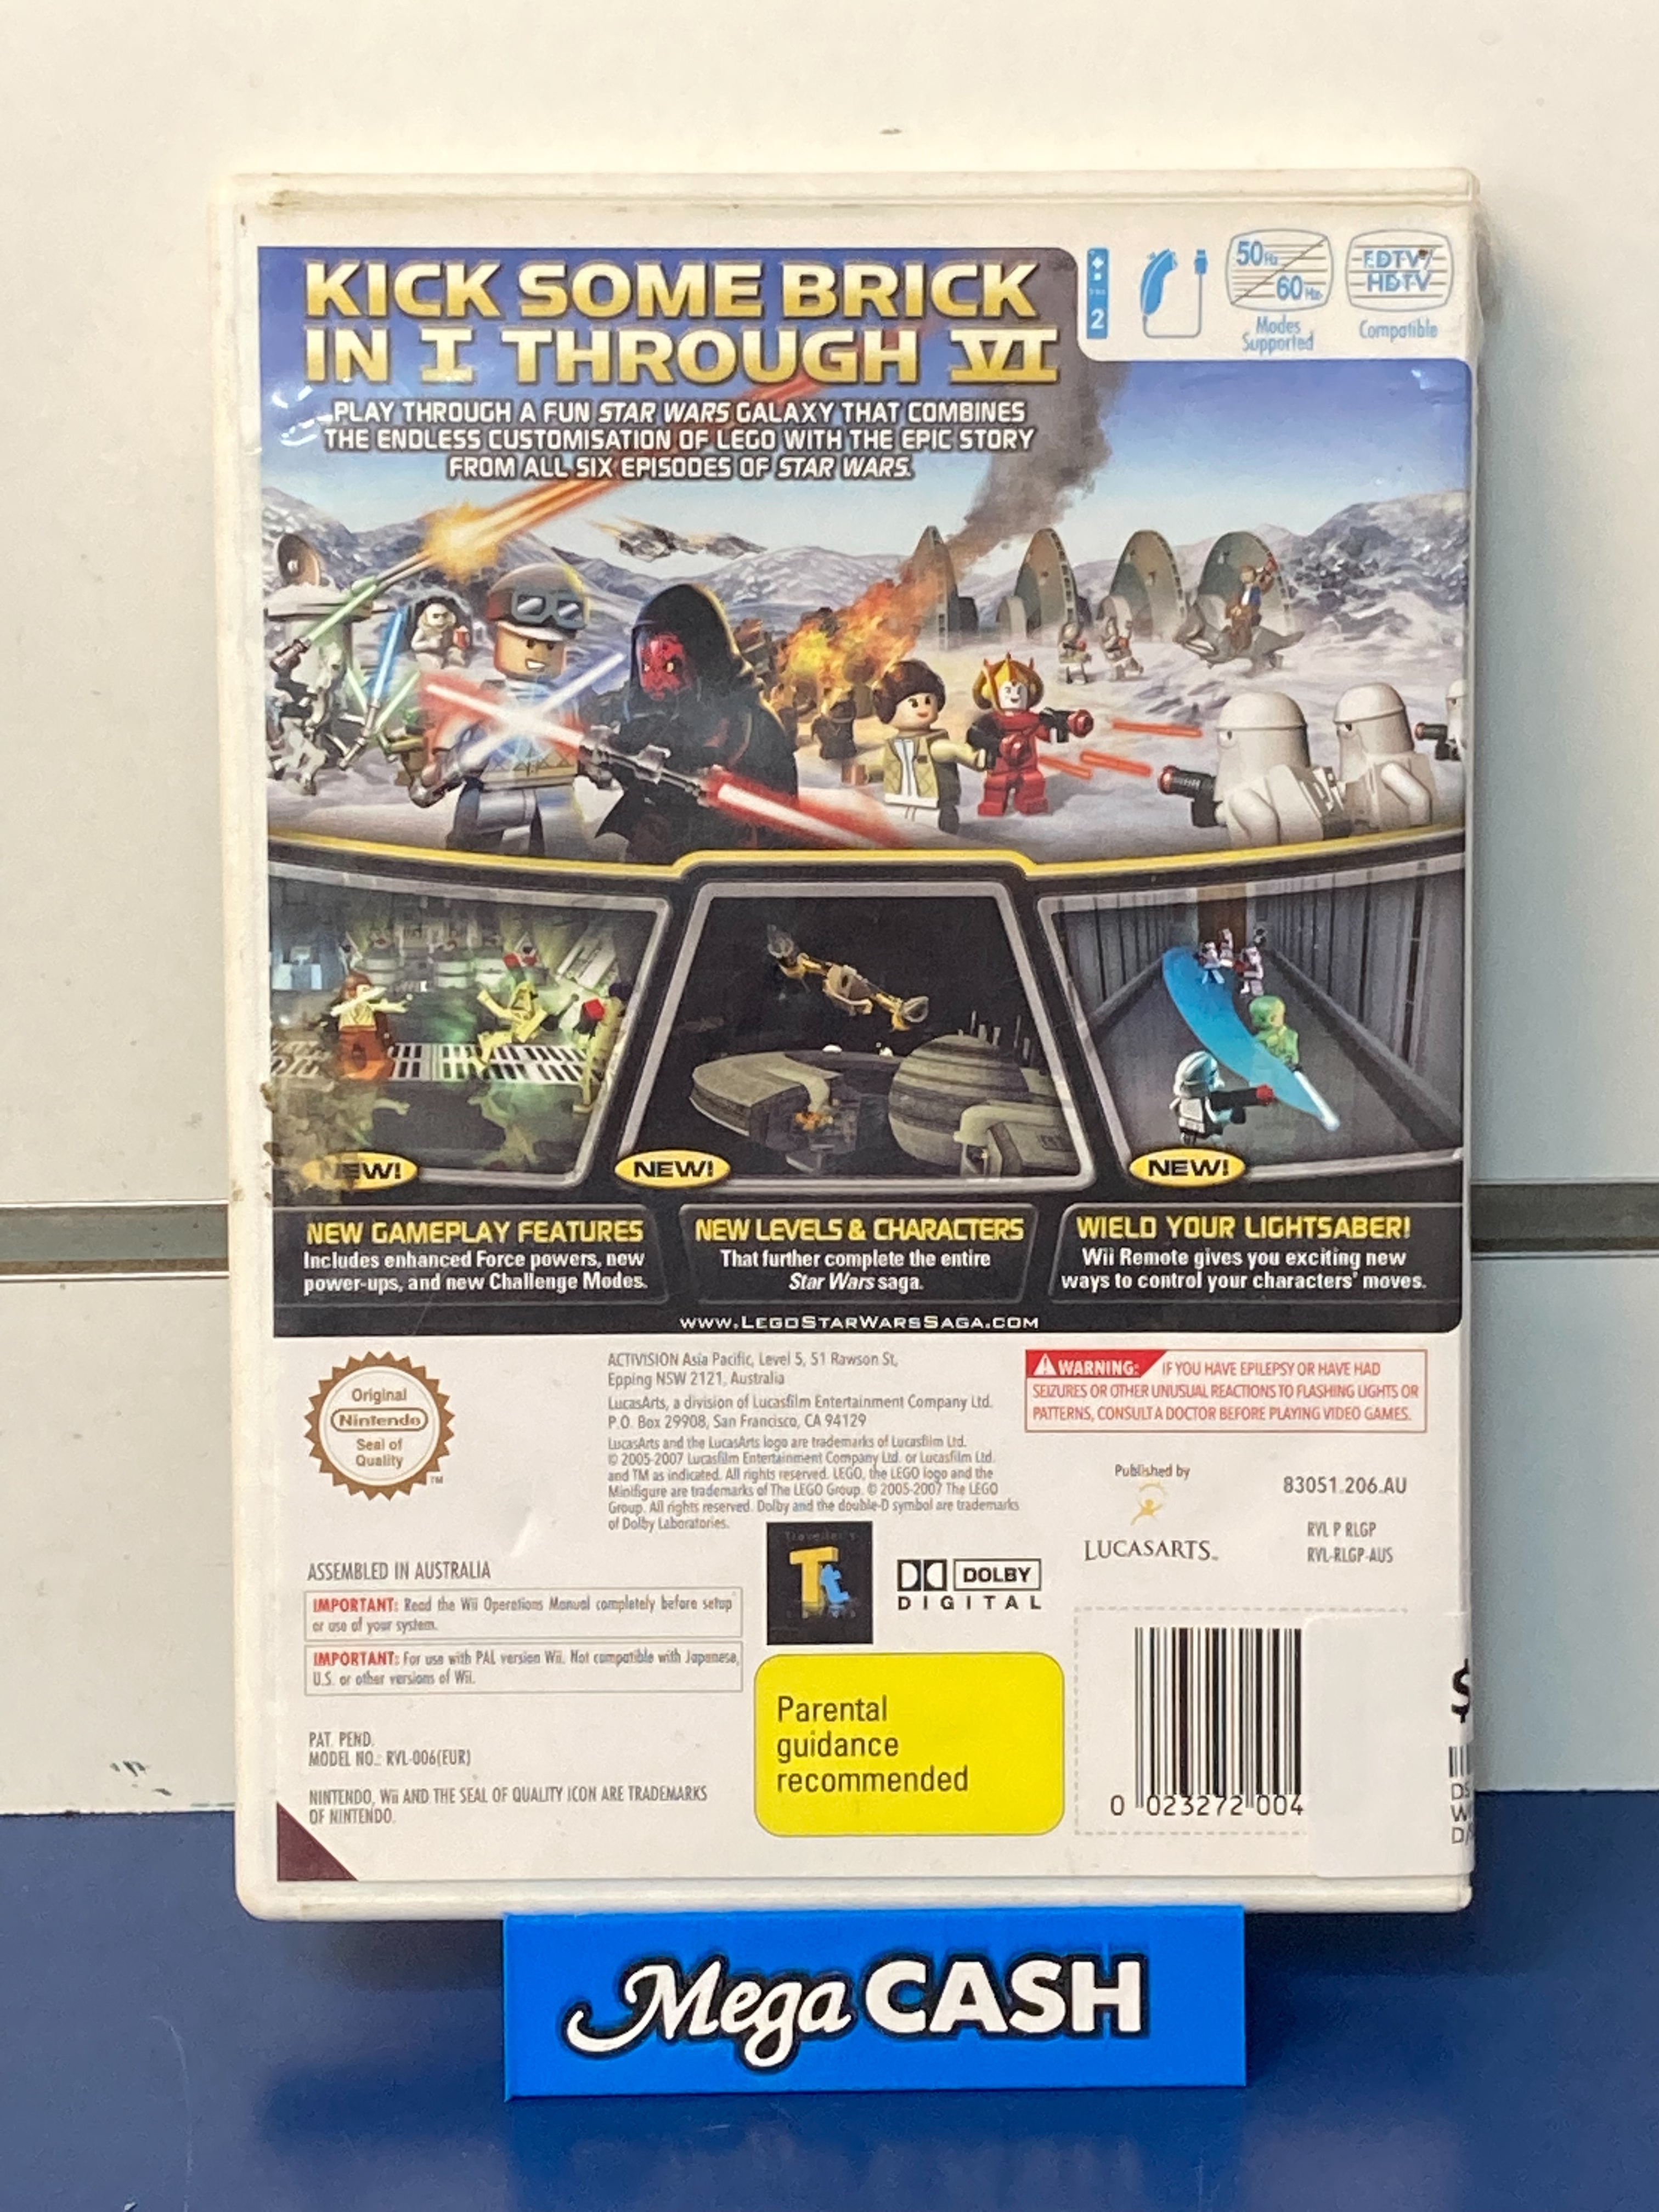 Used Lego Star Wars The Complete Saga - Nintendo Wii (Used